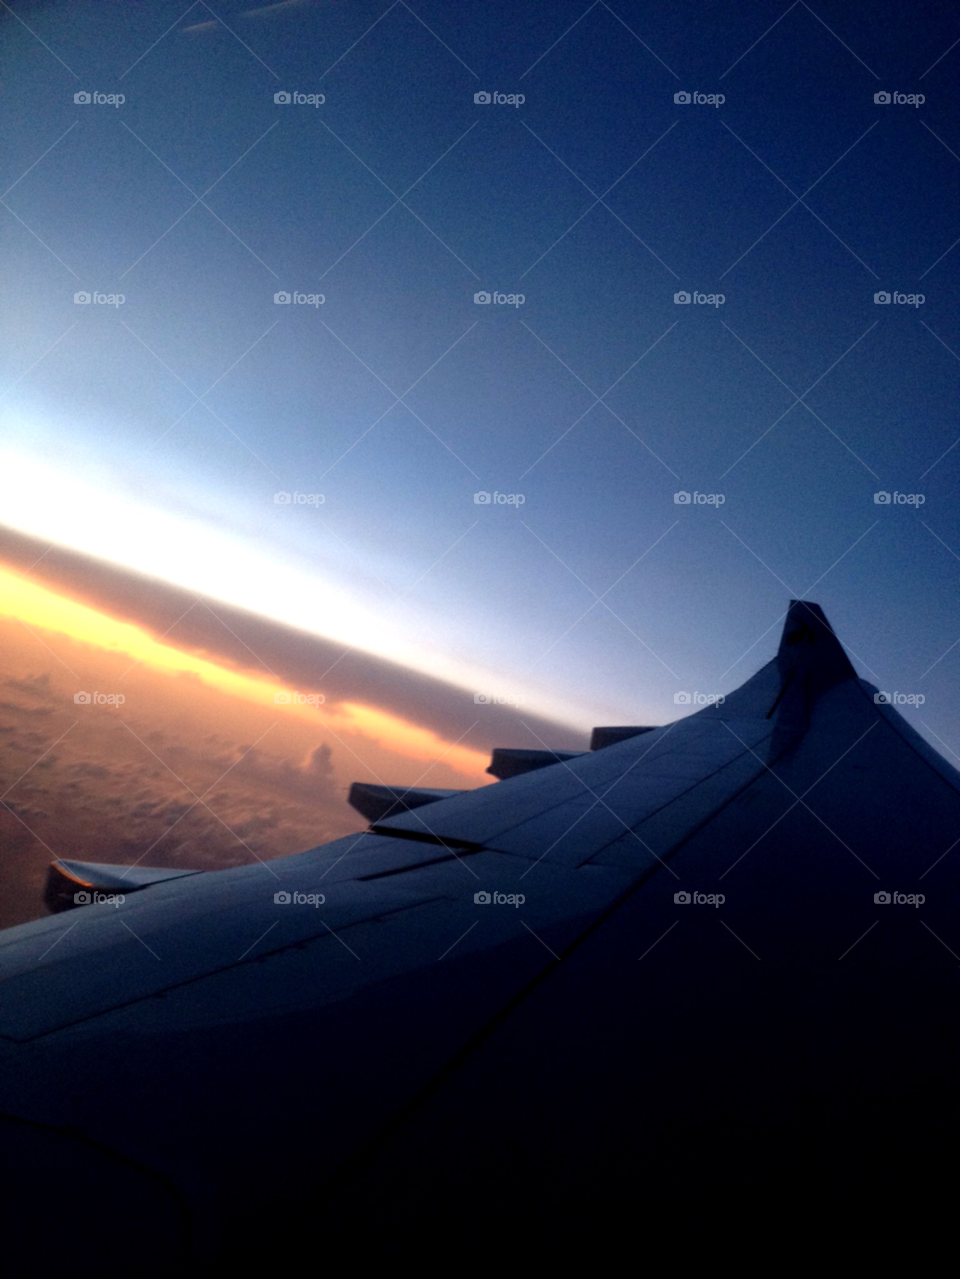 sunset plane qatar airways up in the air by brunhilda